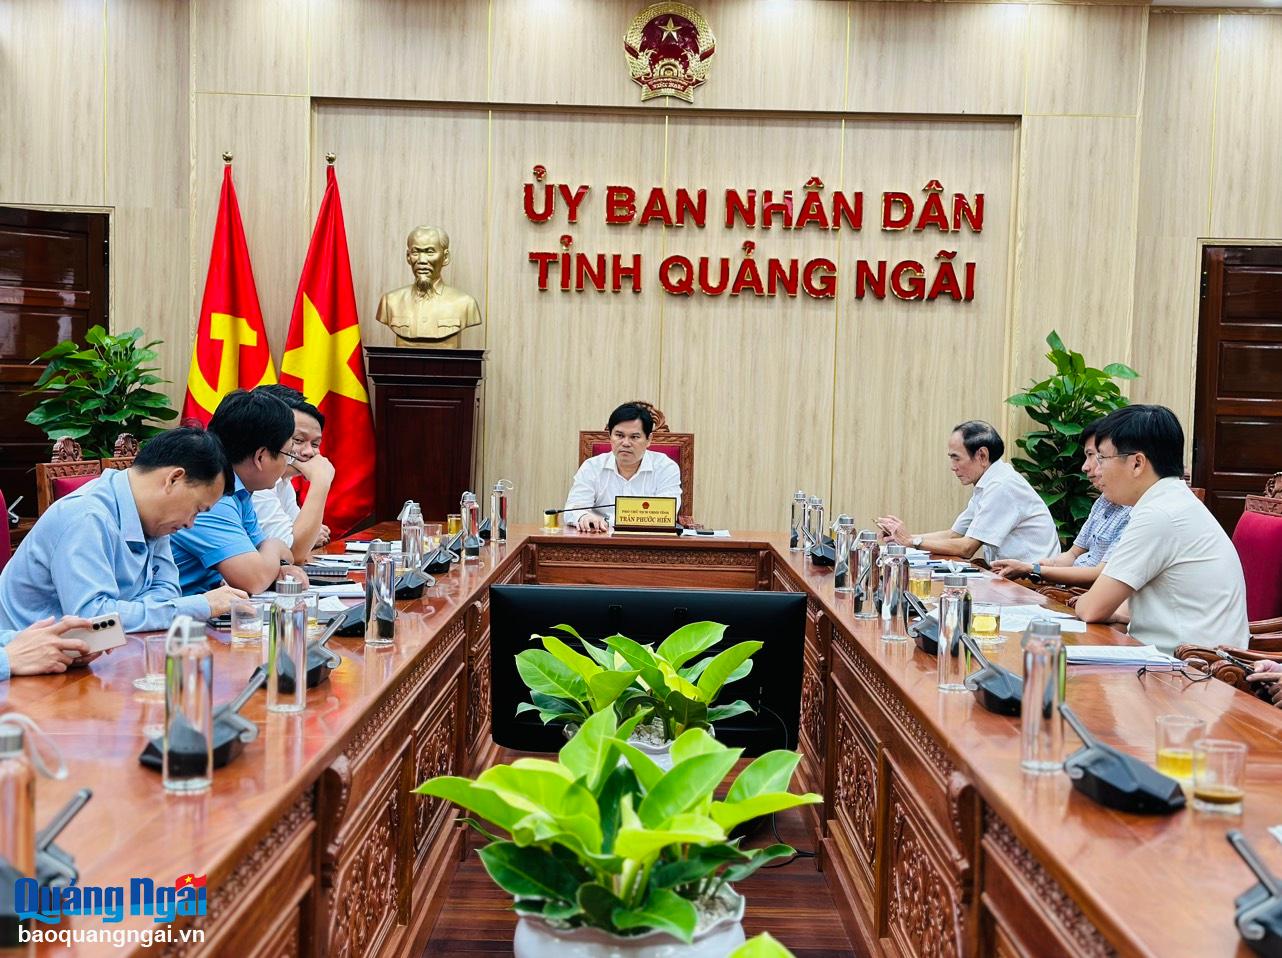 Phó Chủ tịch UBND tỉnh Trần Phước Hiền chủ trì tại điểm cầu Quảng Ngãi.